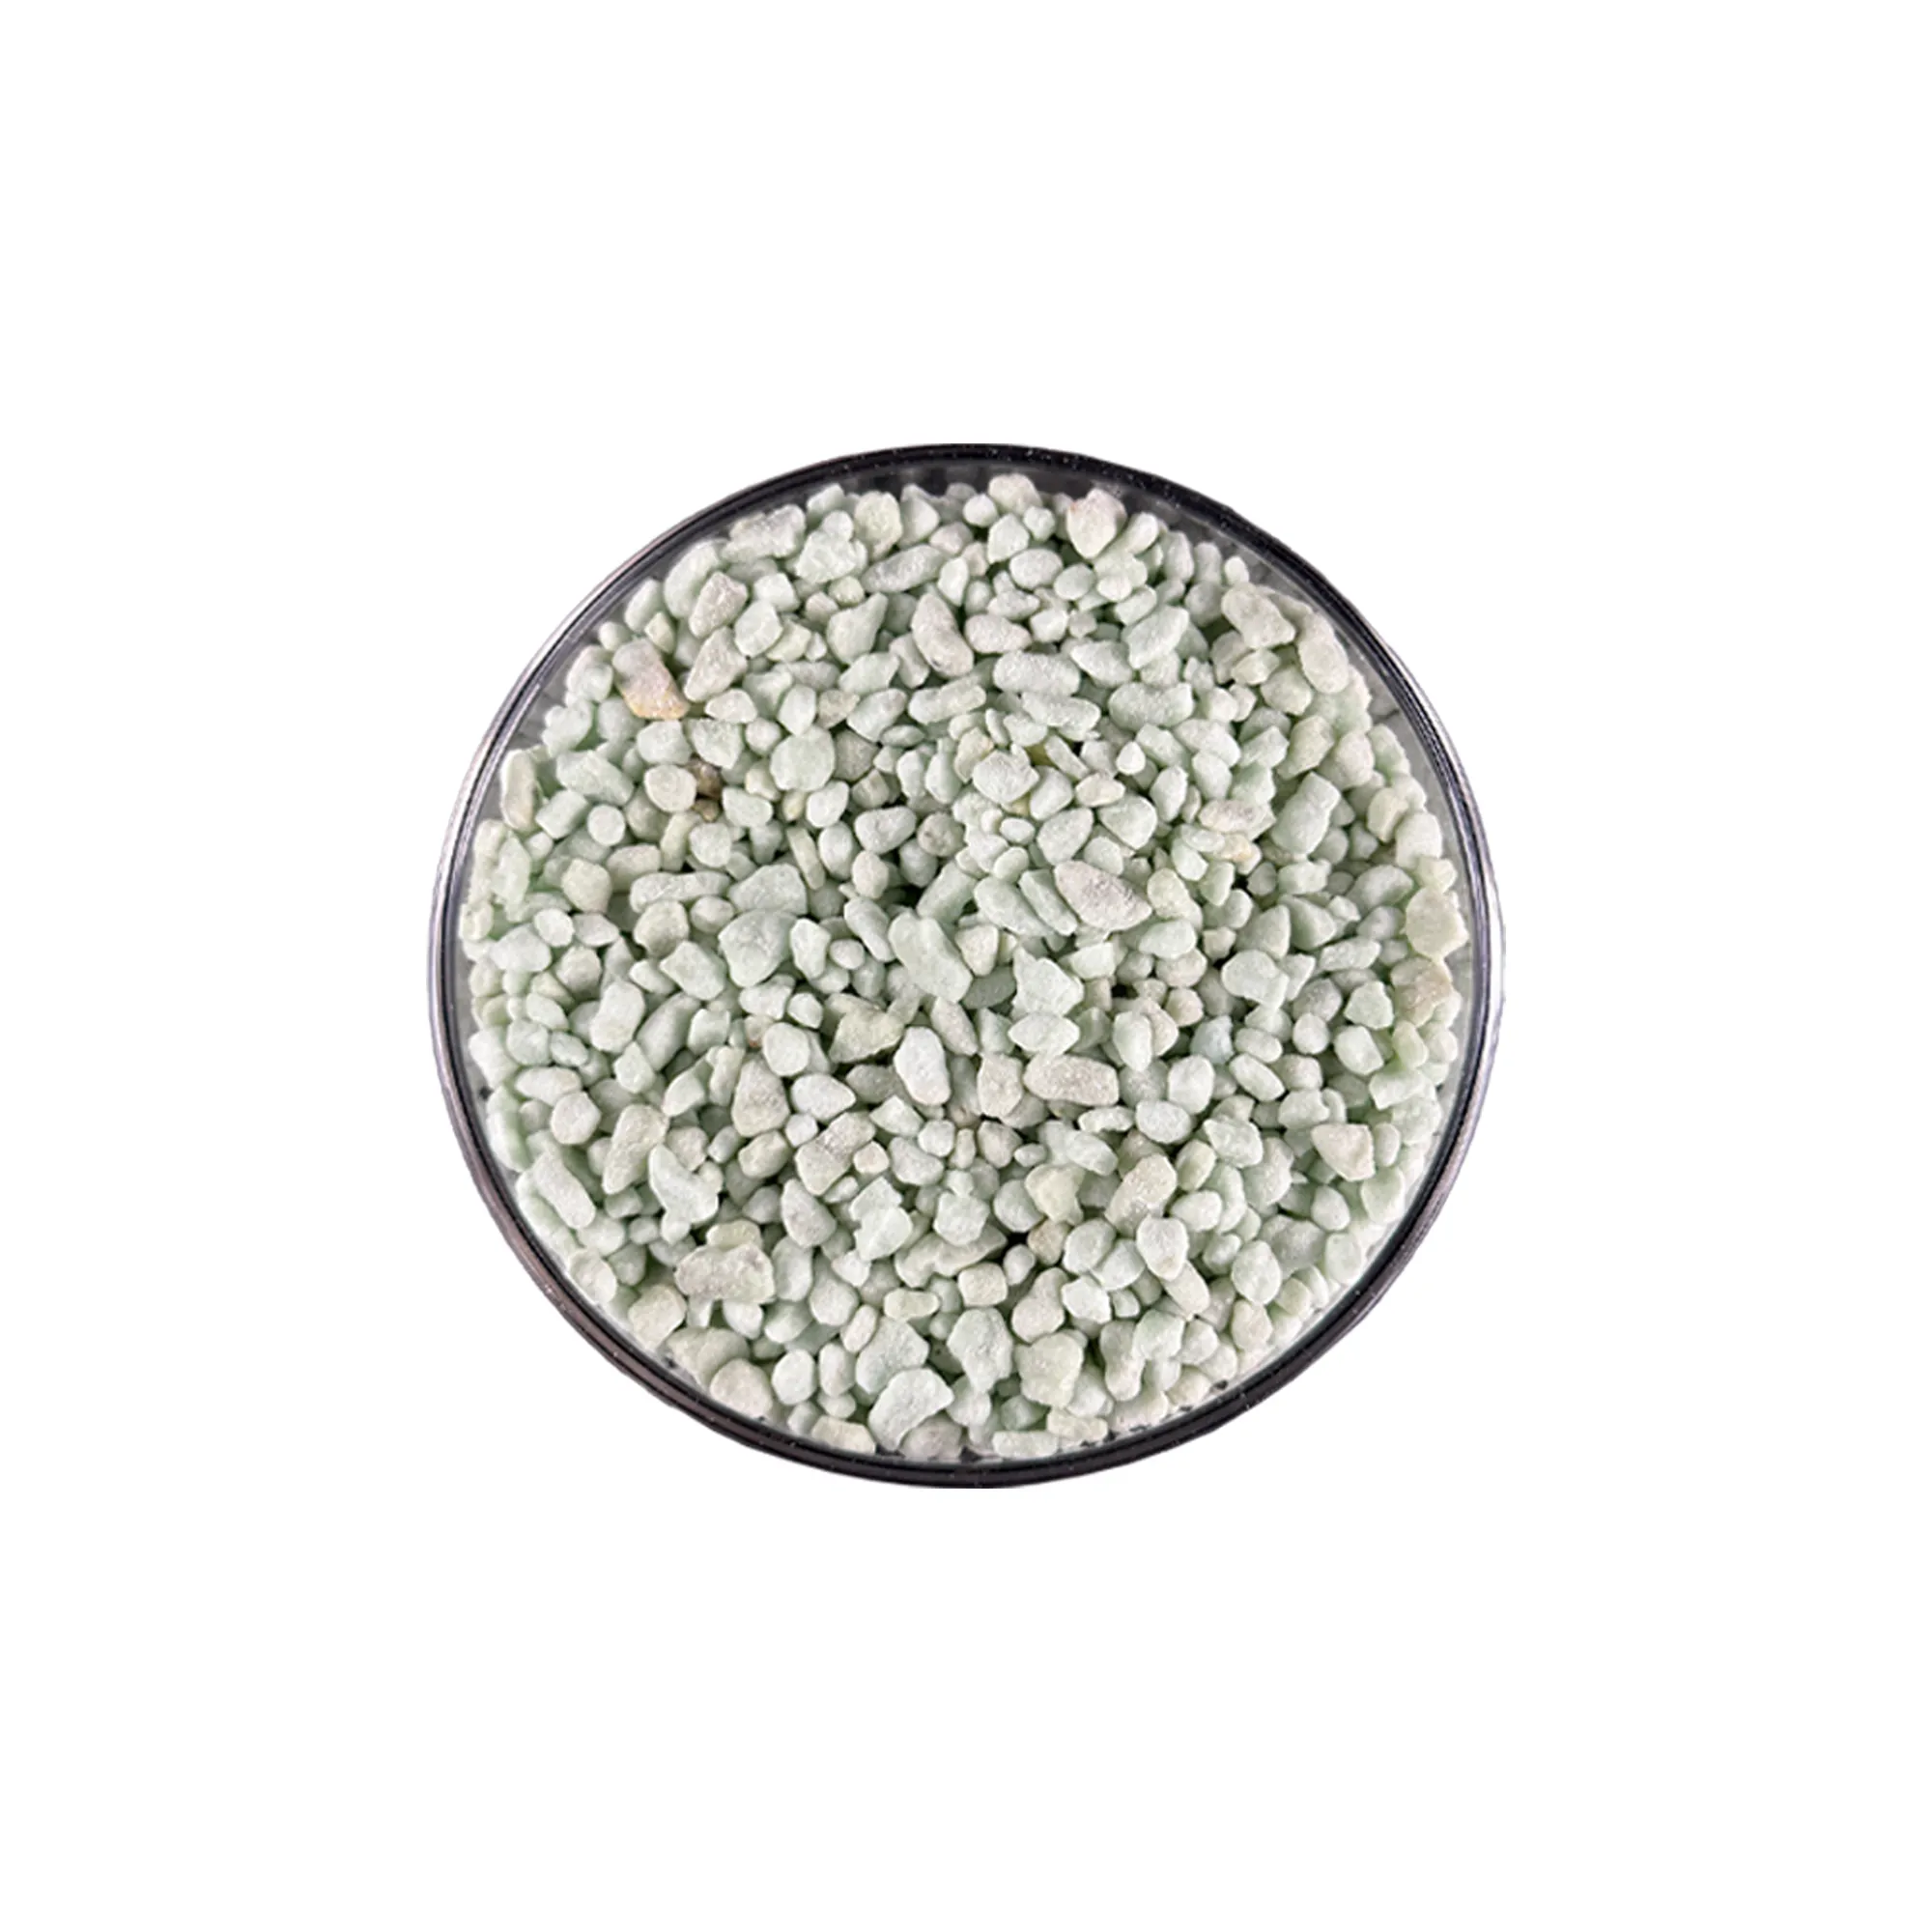 Sulfate ferreux vert Heptahydraté granulaire à bas prix Sulfate de fer heptahydraté Sulfate ferreux pour le traitement de l'eau